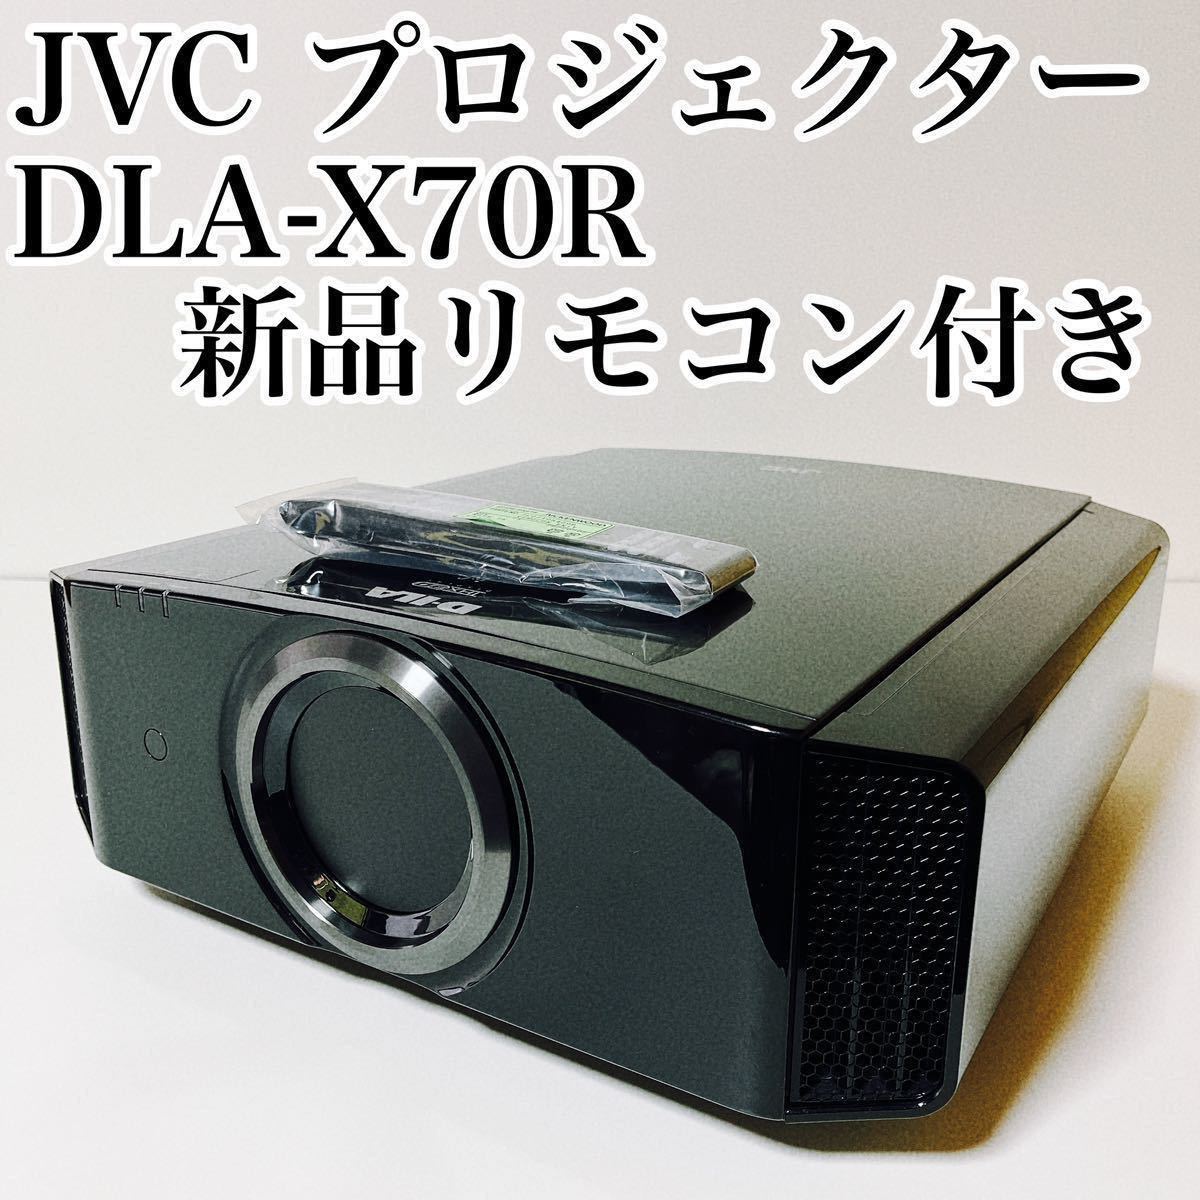 希少廃盤 JVC DLA-X70R プロジェクター Victor フルOPホームシアター ビクター D-ILA 4K 3D対応 KENWOOD ケンウッド